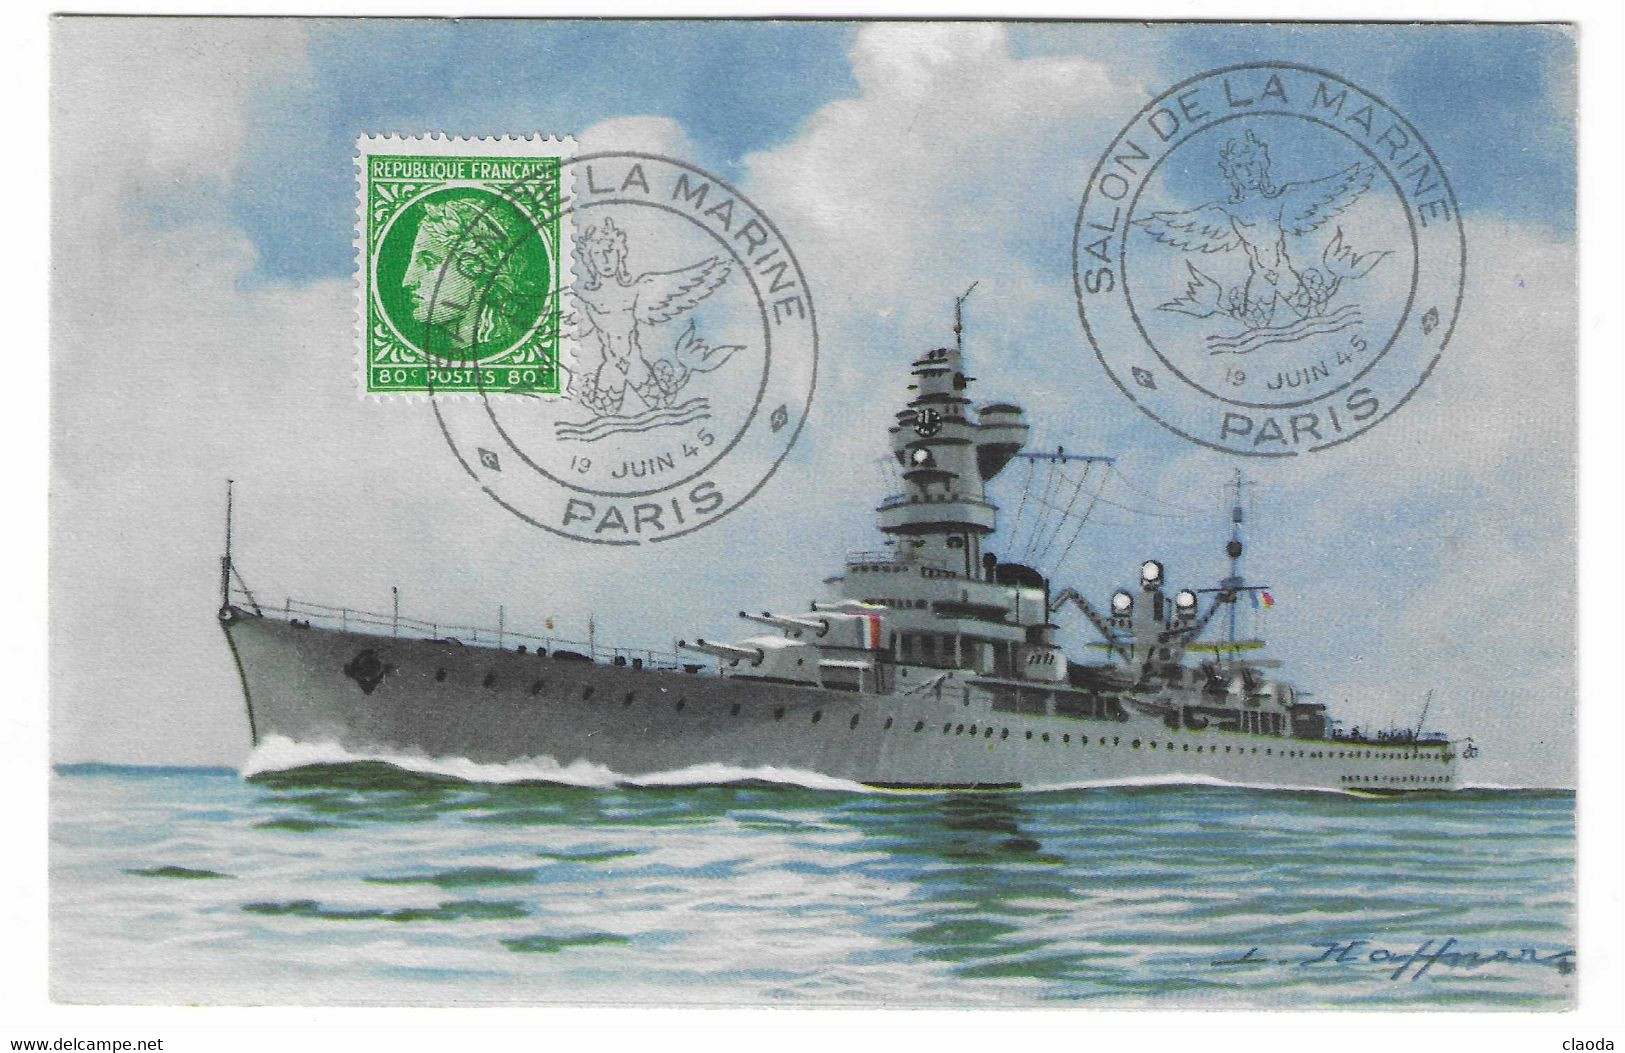 98 SM - SALON DE LA MARINE 1945 -Croiseur ALGÉRIE - Illustrateur L. HAFFNER -  Cachet à Date 19  Juin 1945 - Scheepspost